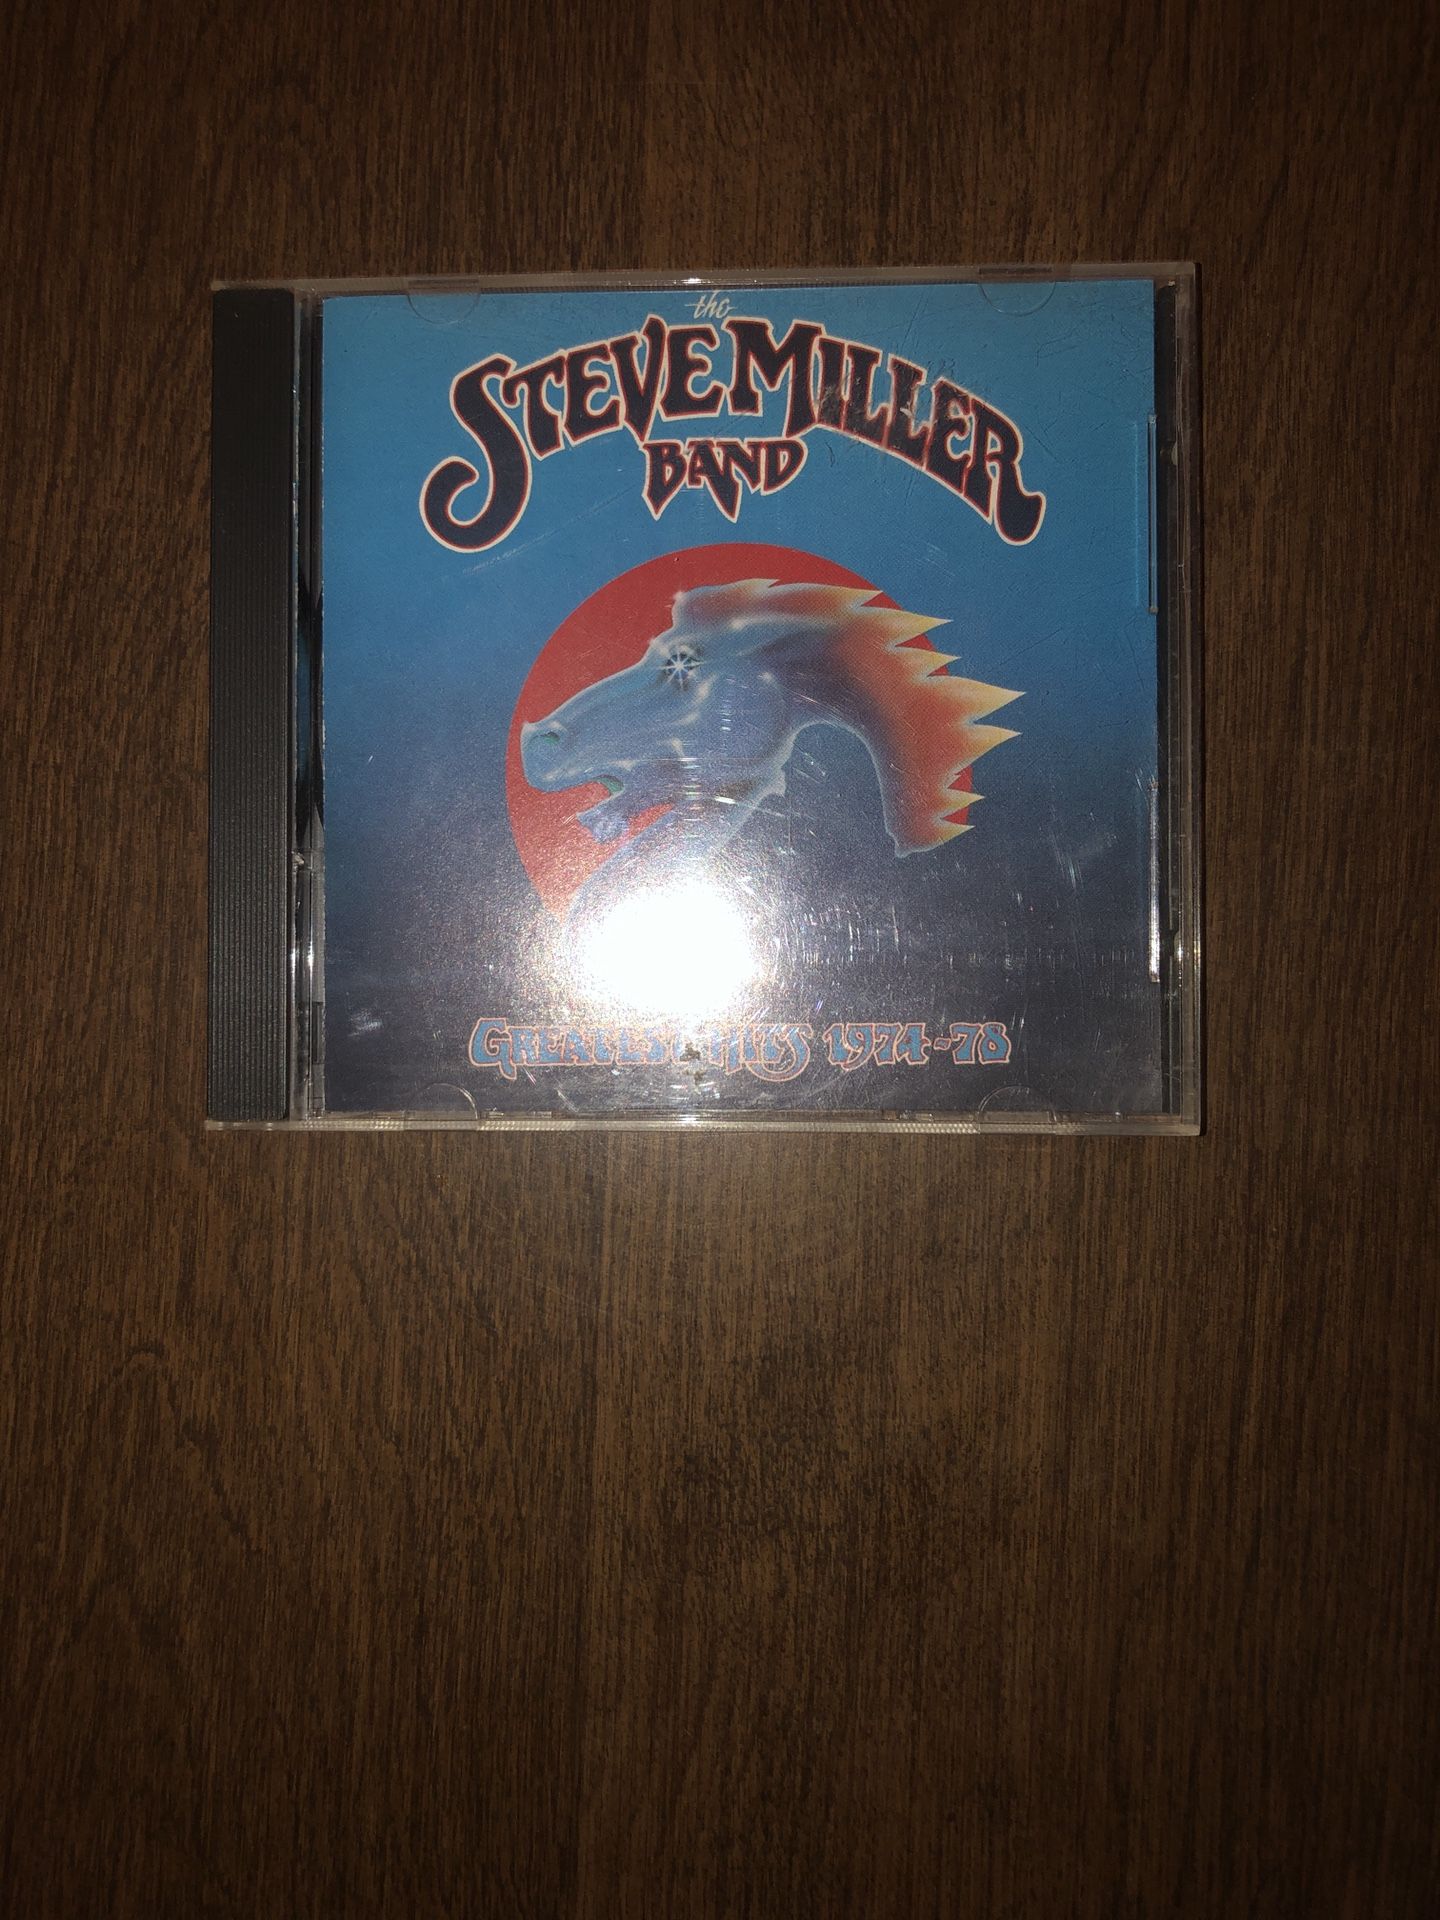 Steven Miller Band CD